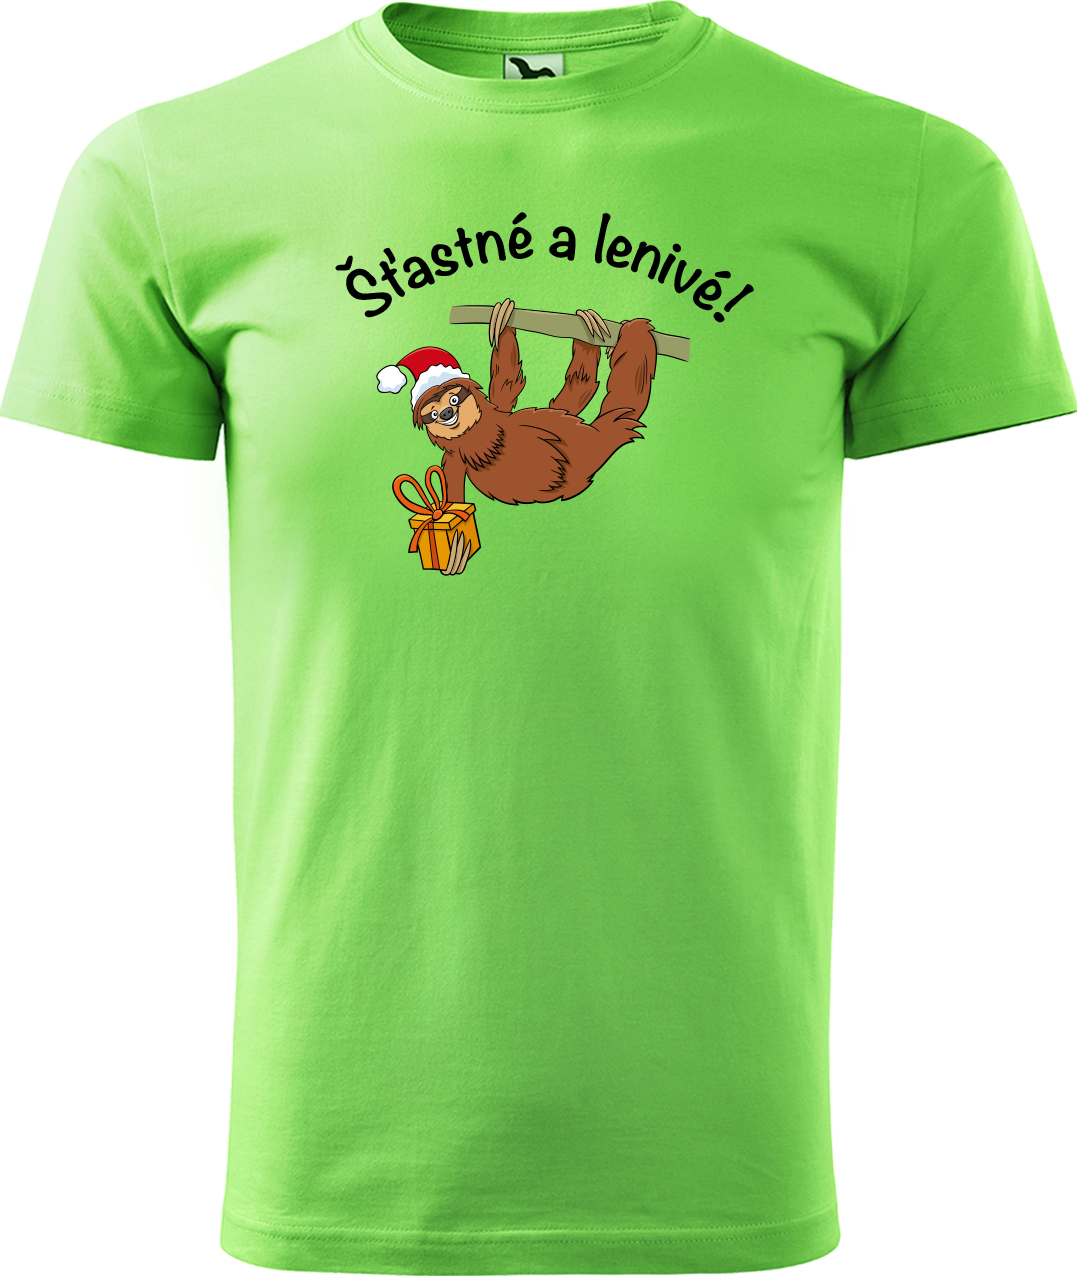 Pánské vánoční tričko - Šťastné a lenivé! Velikost: XL, Barva: Apple Green (92)